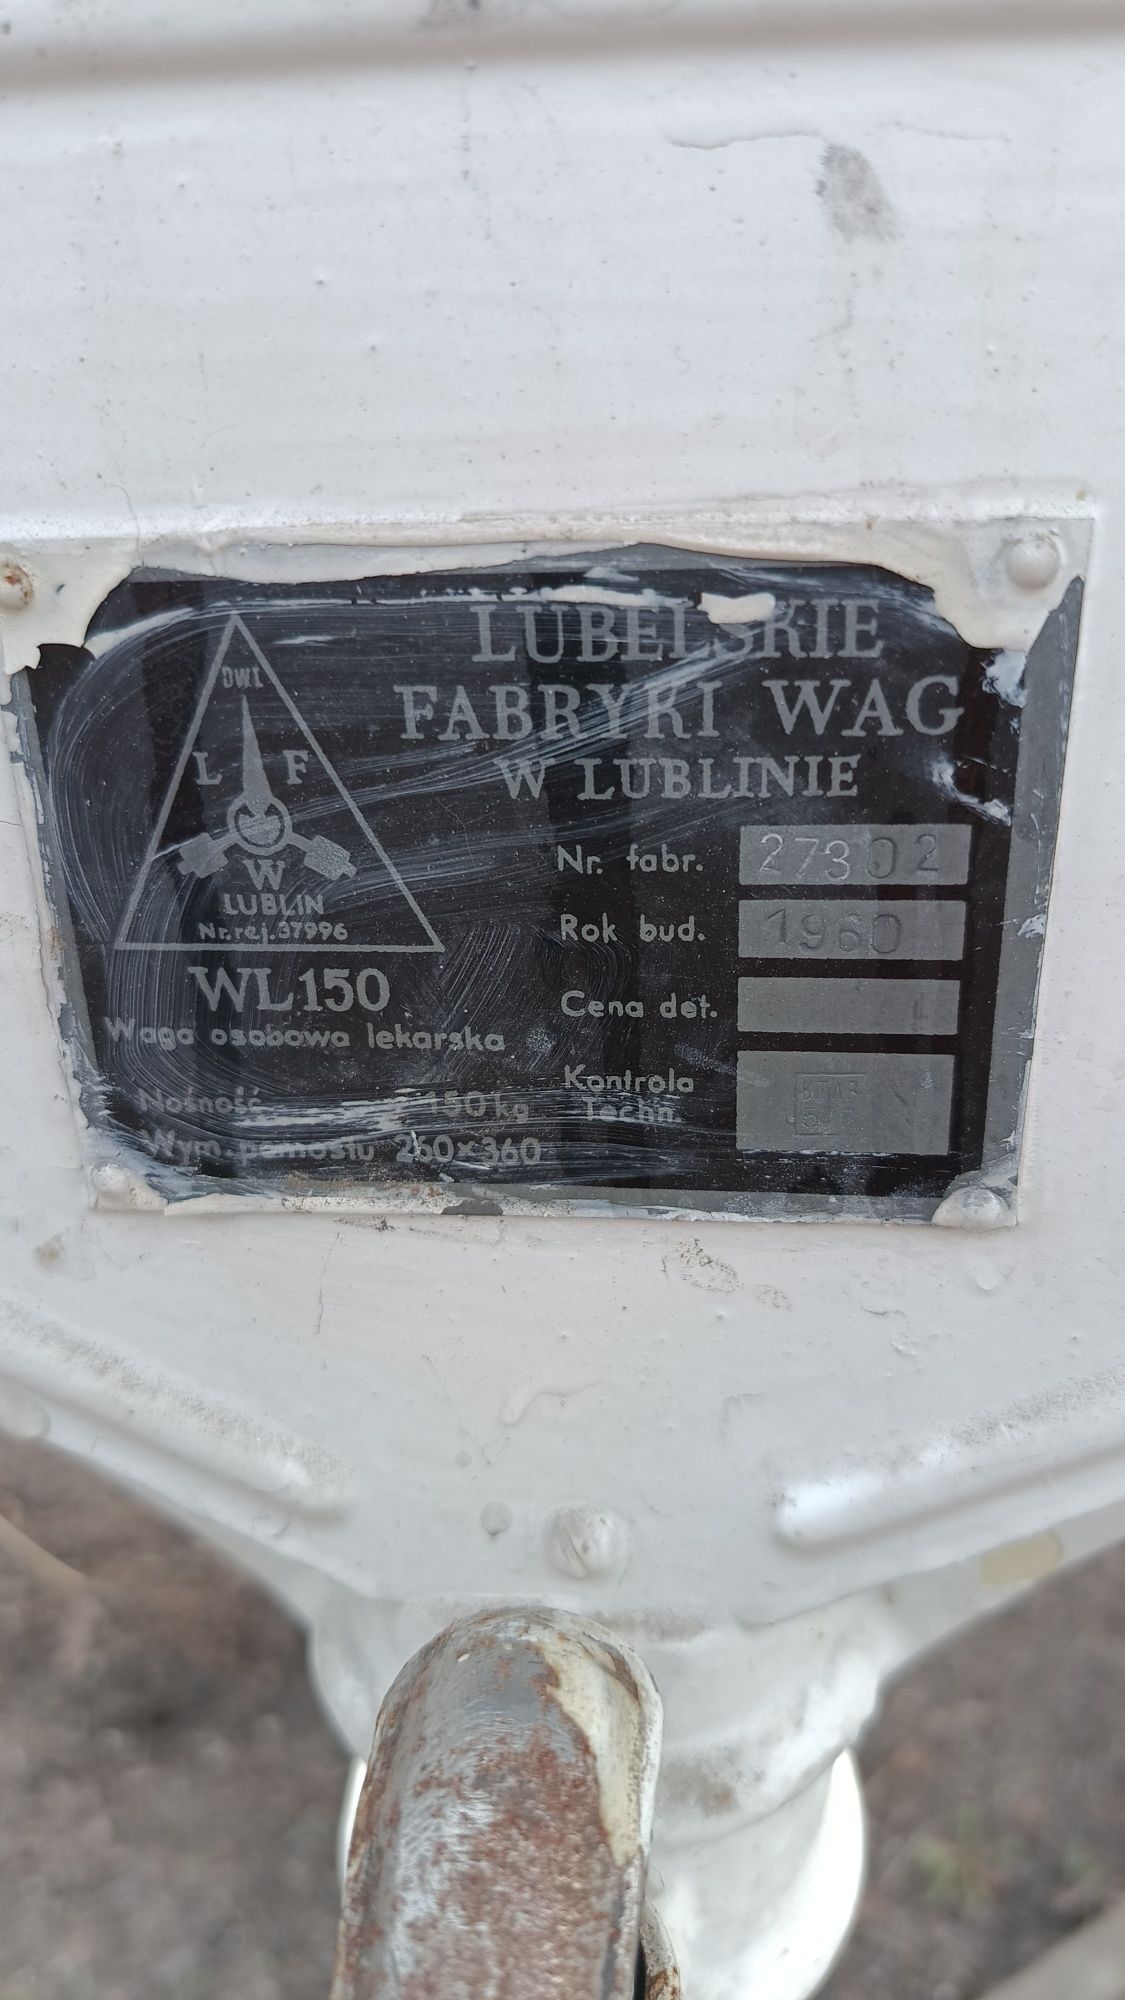 Waga osobowa lekarska WL150 z 1960 roku Lubelskie Fabryki Wag